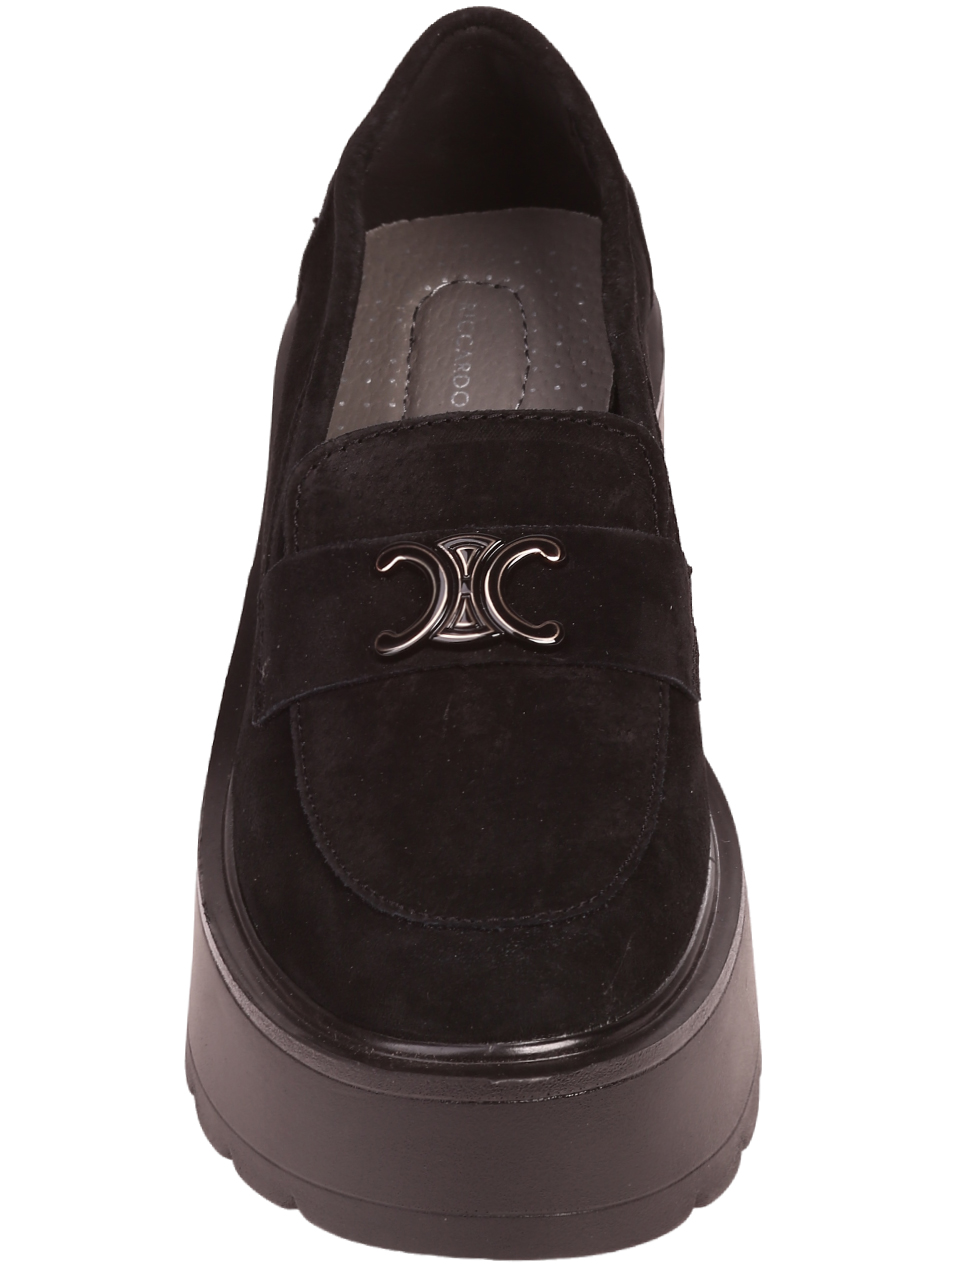 Ежедневни дамски олекотени обувки на платформа в черно 3AF-23684 black